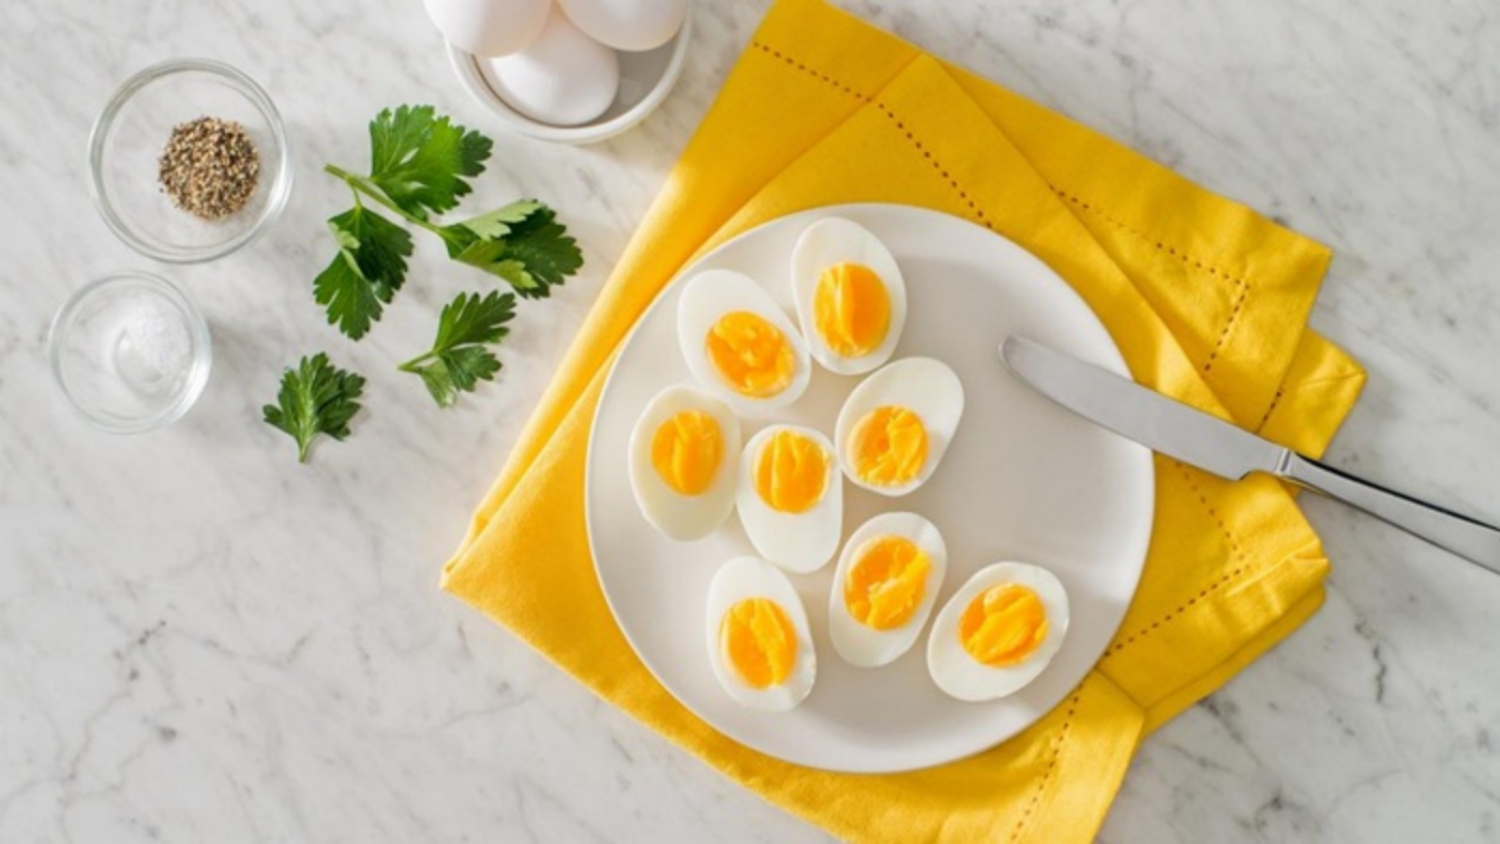 Chế biến trứng như thế nào là tốt nhất?